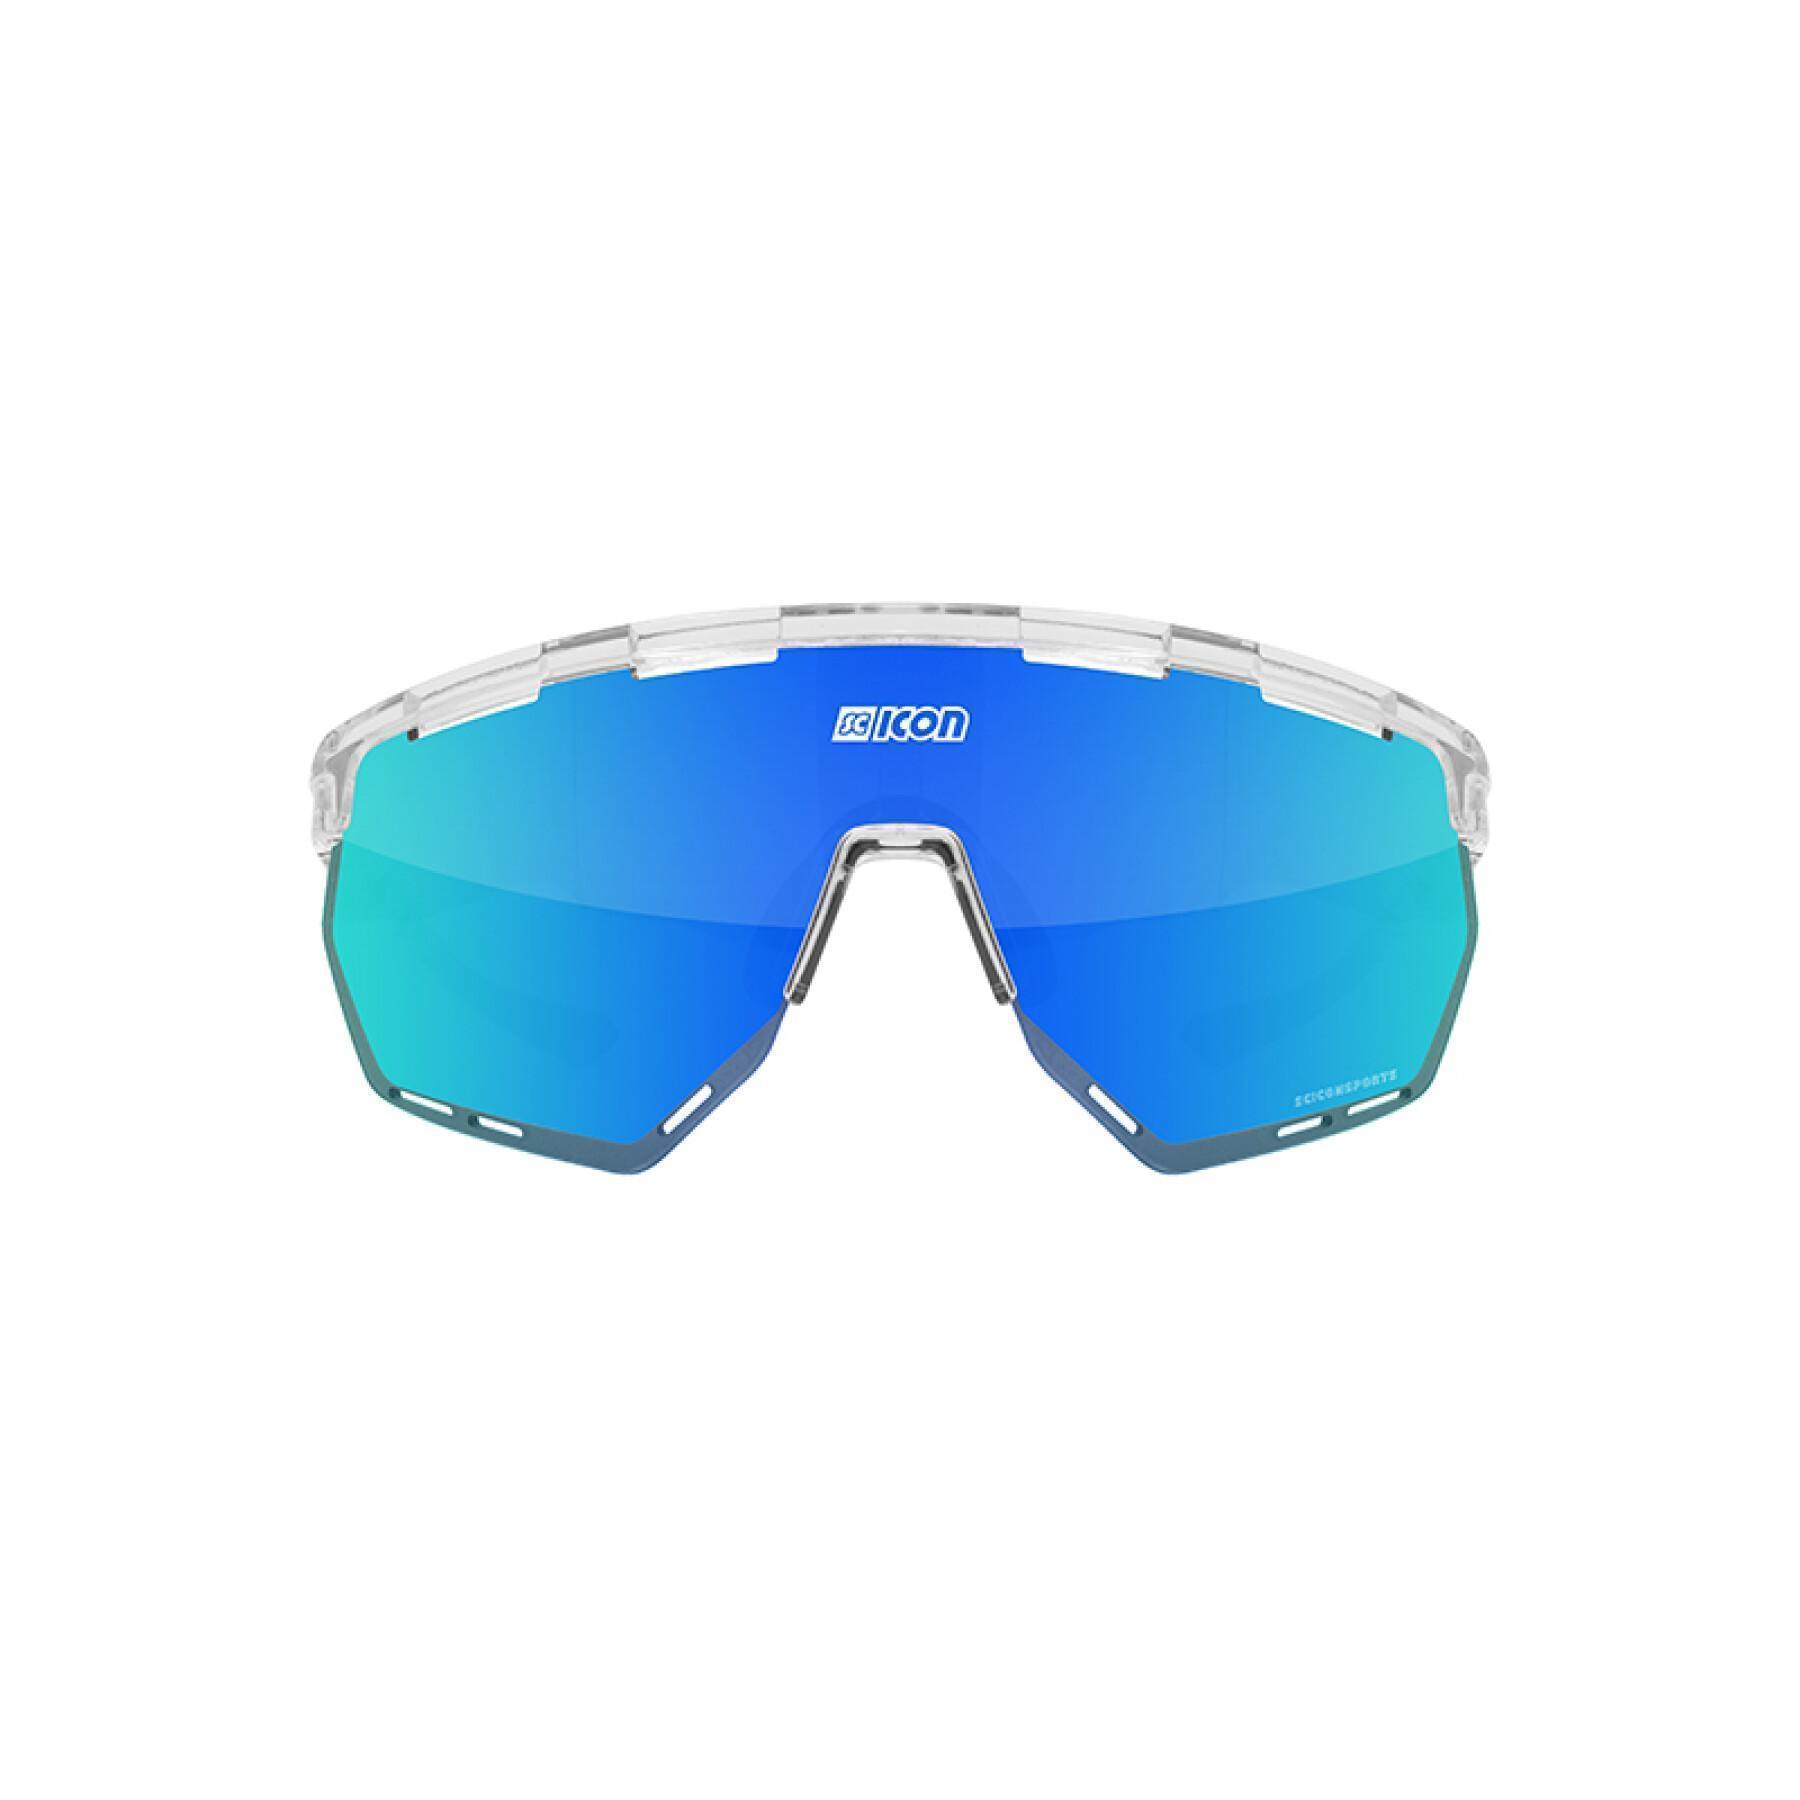 Gafas Scicon aerowing scnpp verre multi-reflet bleues